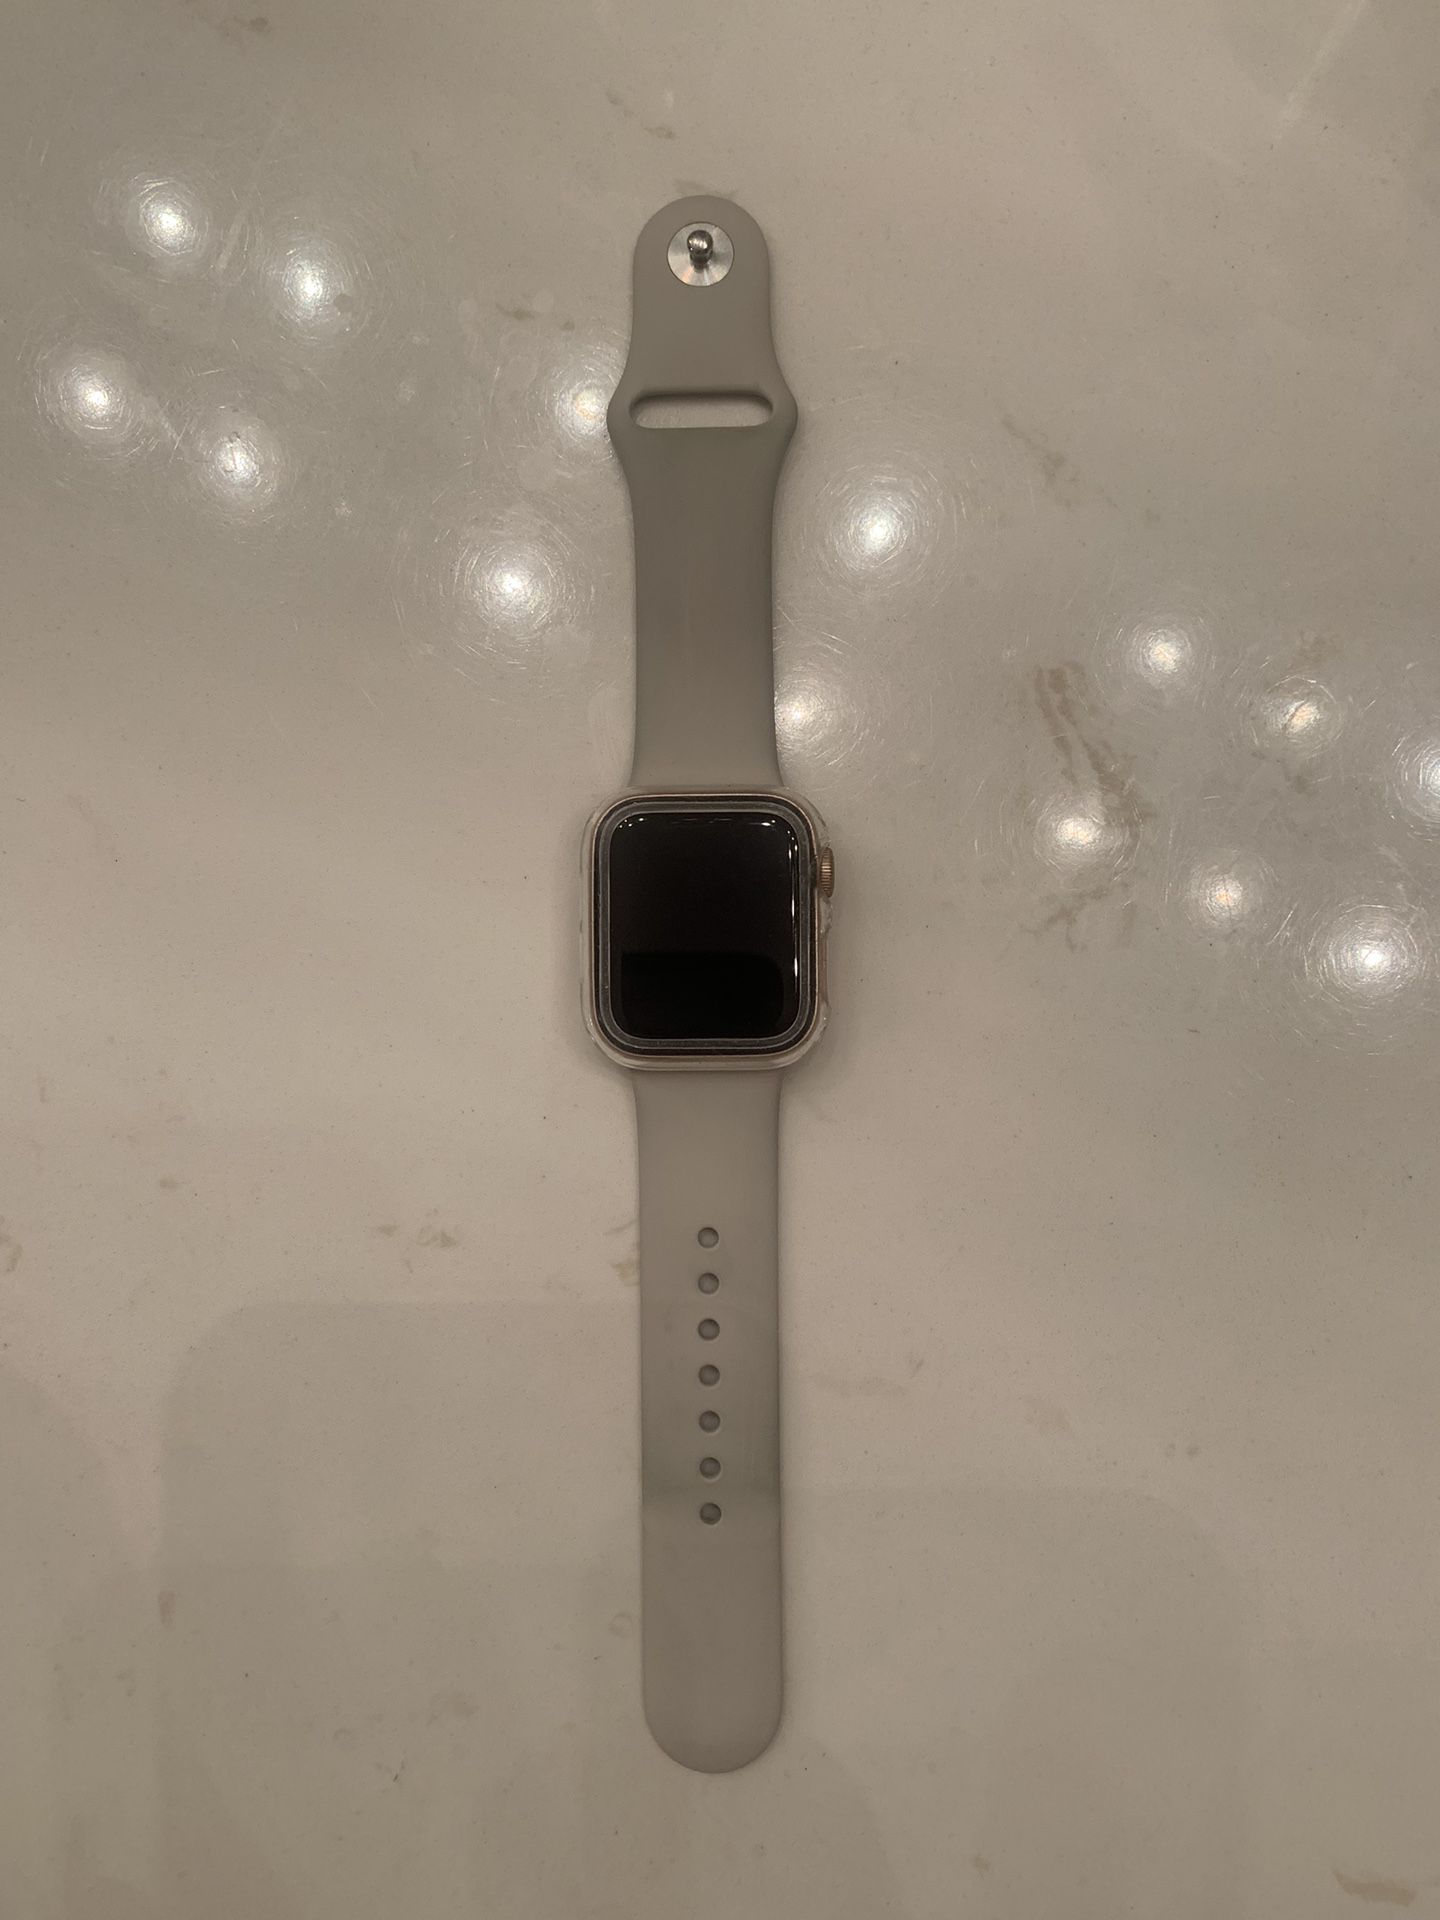 Apple Watch SE Locked